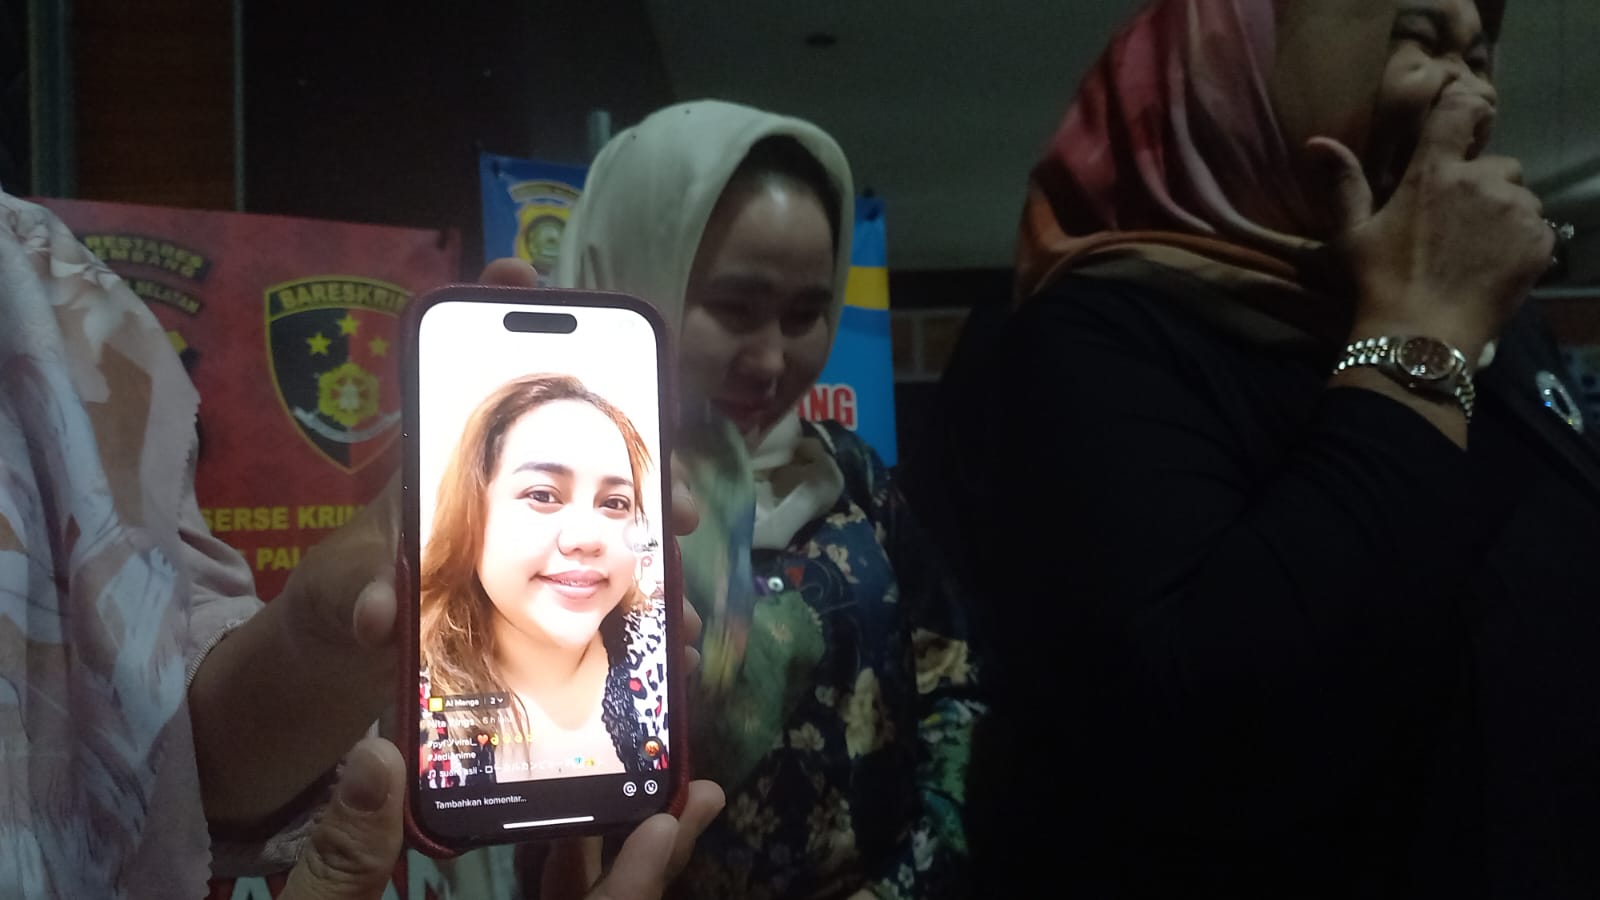 Puluhan Emak-emak Laporkan Selebgram Palembang ke Polisi, Uang Korban Hilang Rp600 Juta